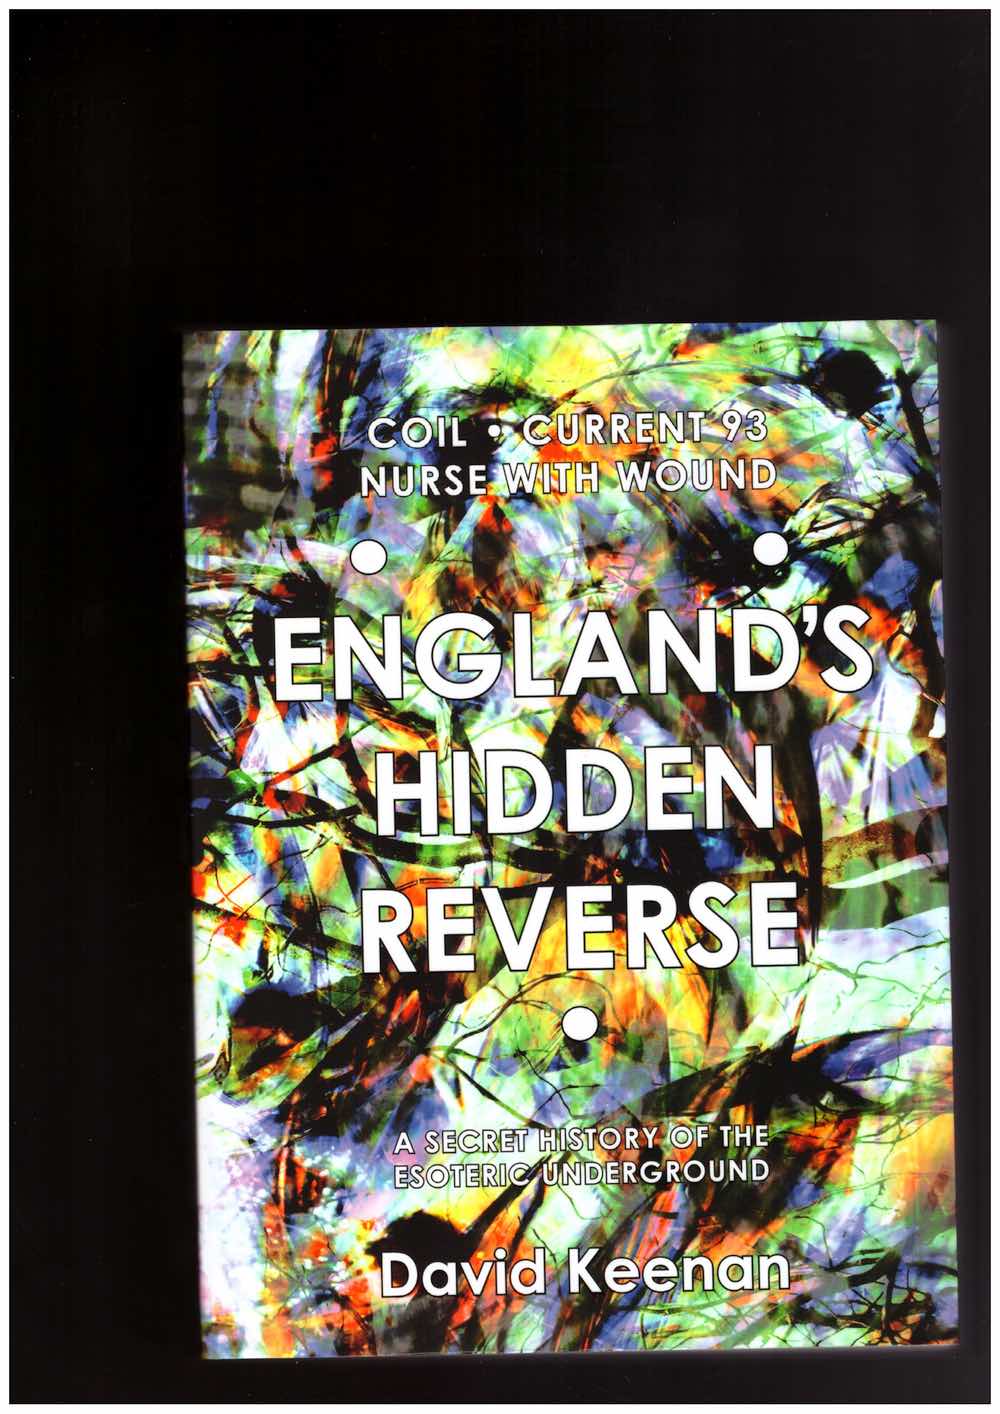 KEENAN, David - England’s Hidden Reverse